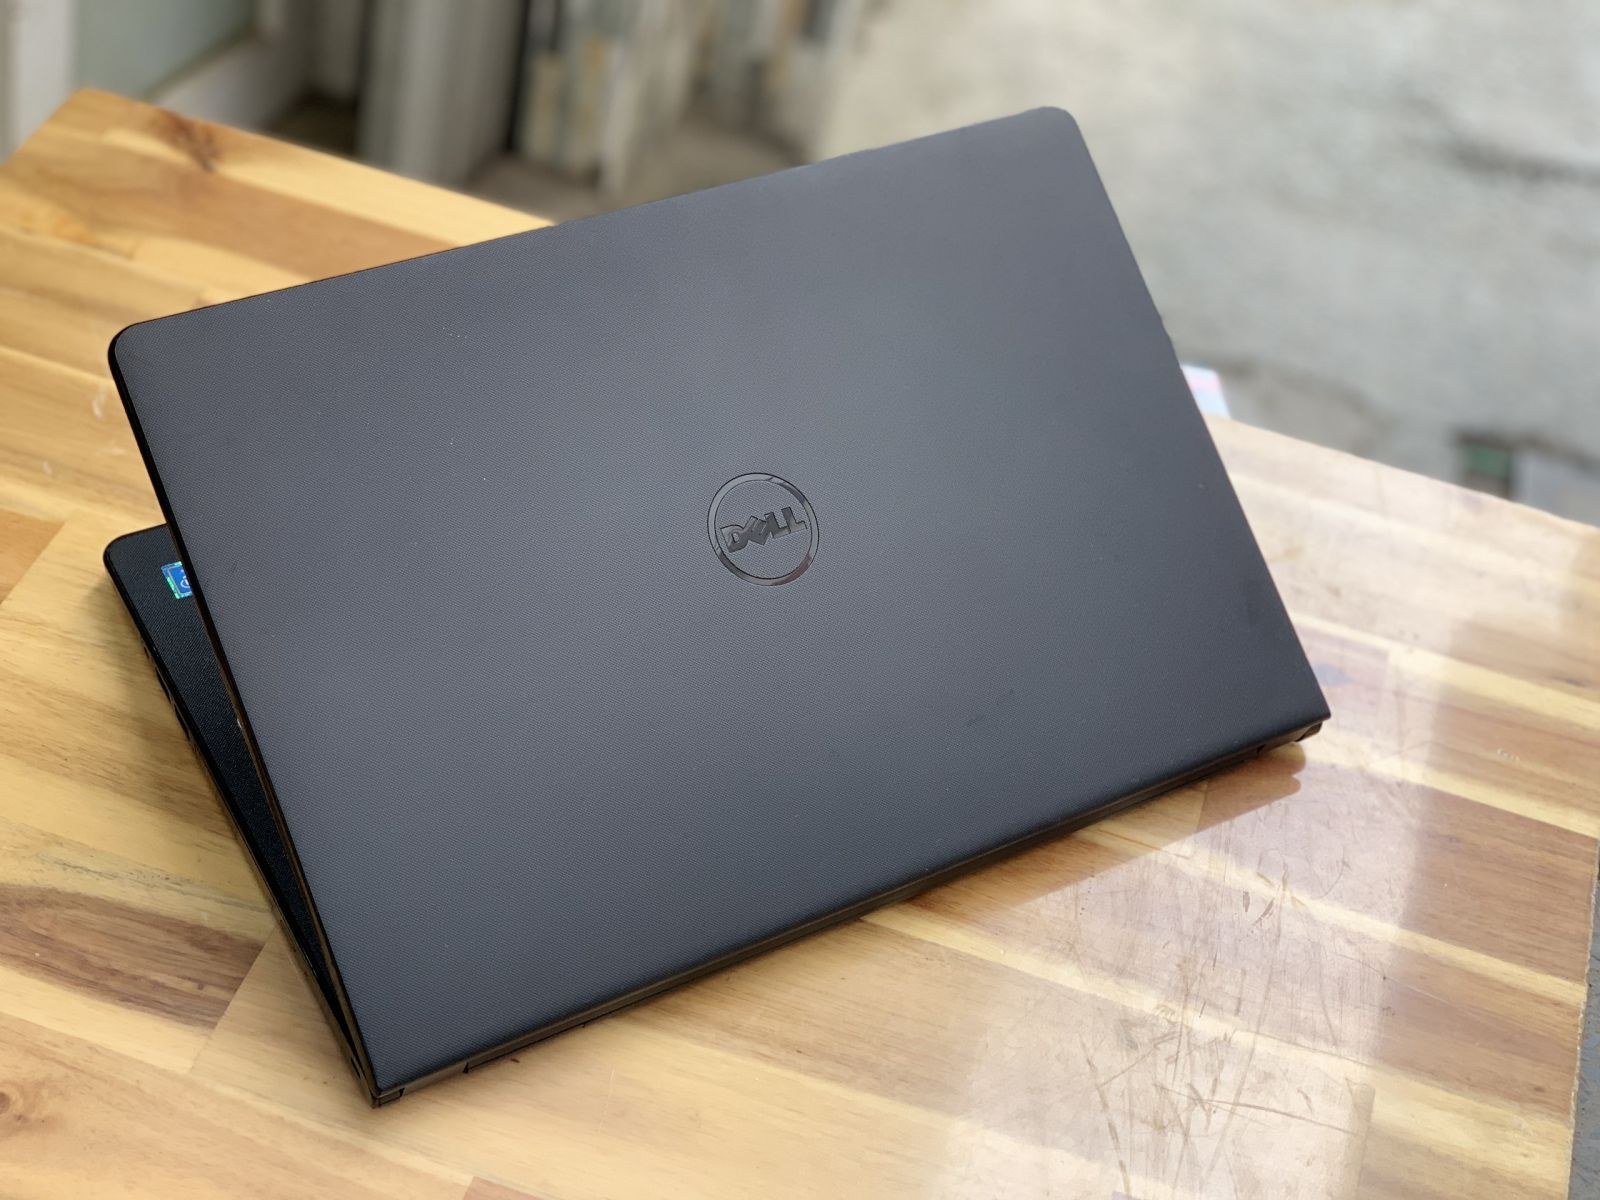 Laptop Dell Inspiron 5558, i7 5500U 8G 128+500G Vga rời 4G Đèn phím Đẹp zin 100% Giá rẻ2